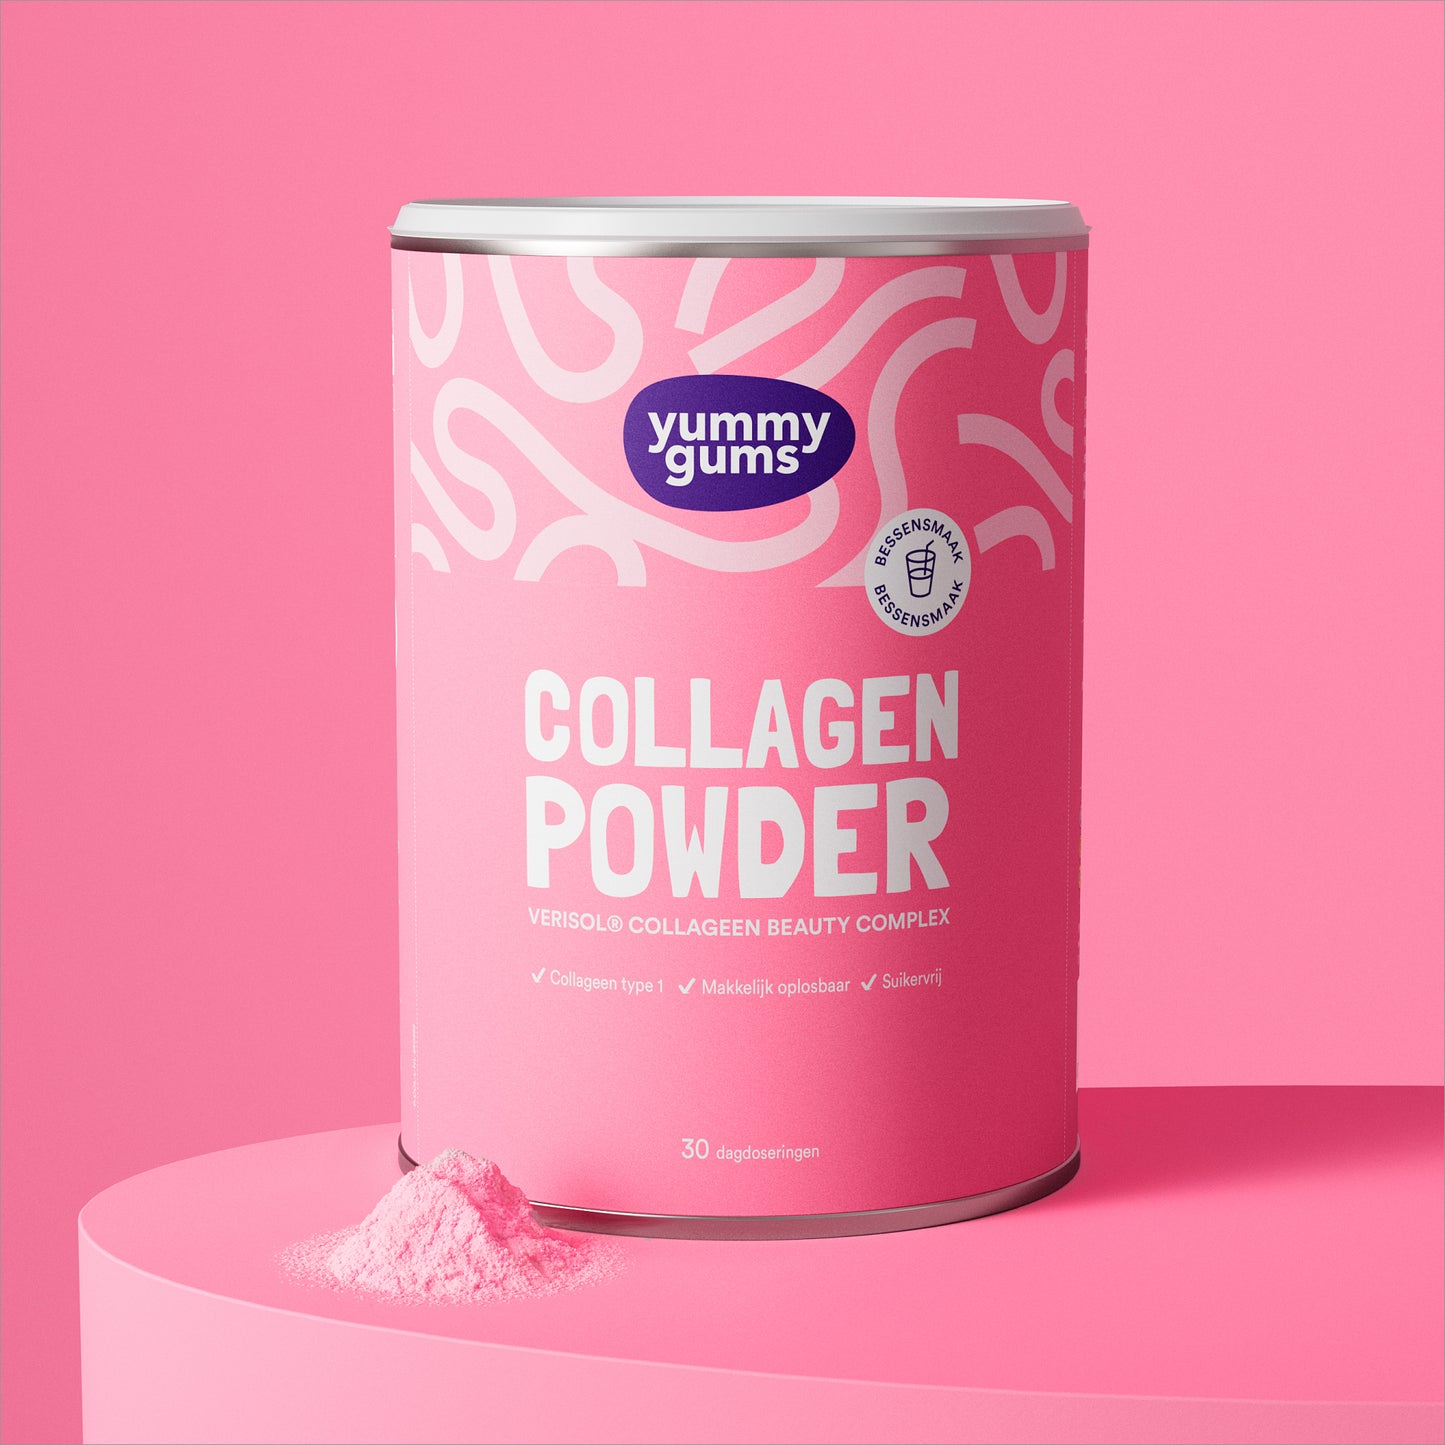 Collagen powder